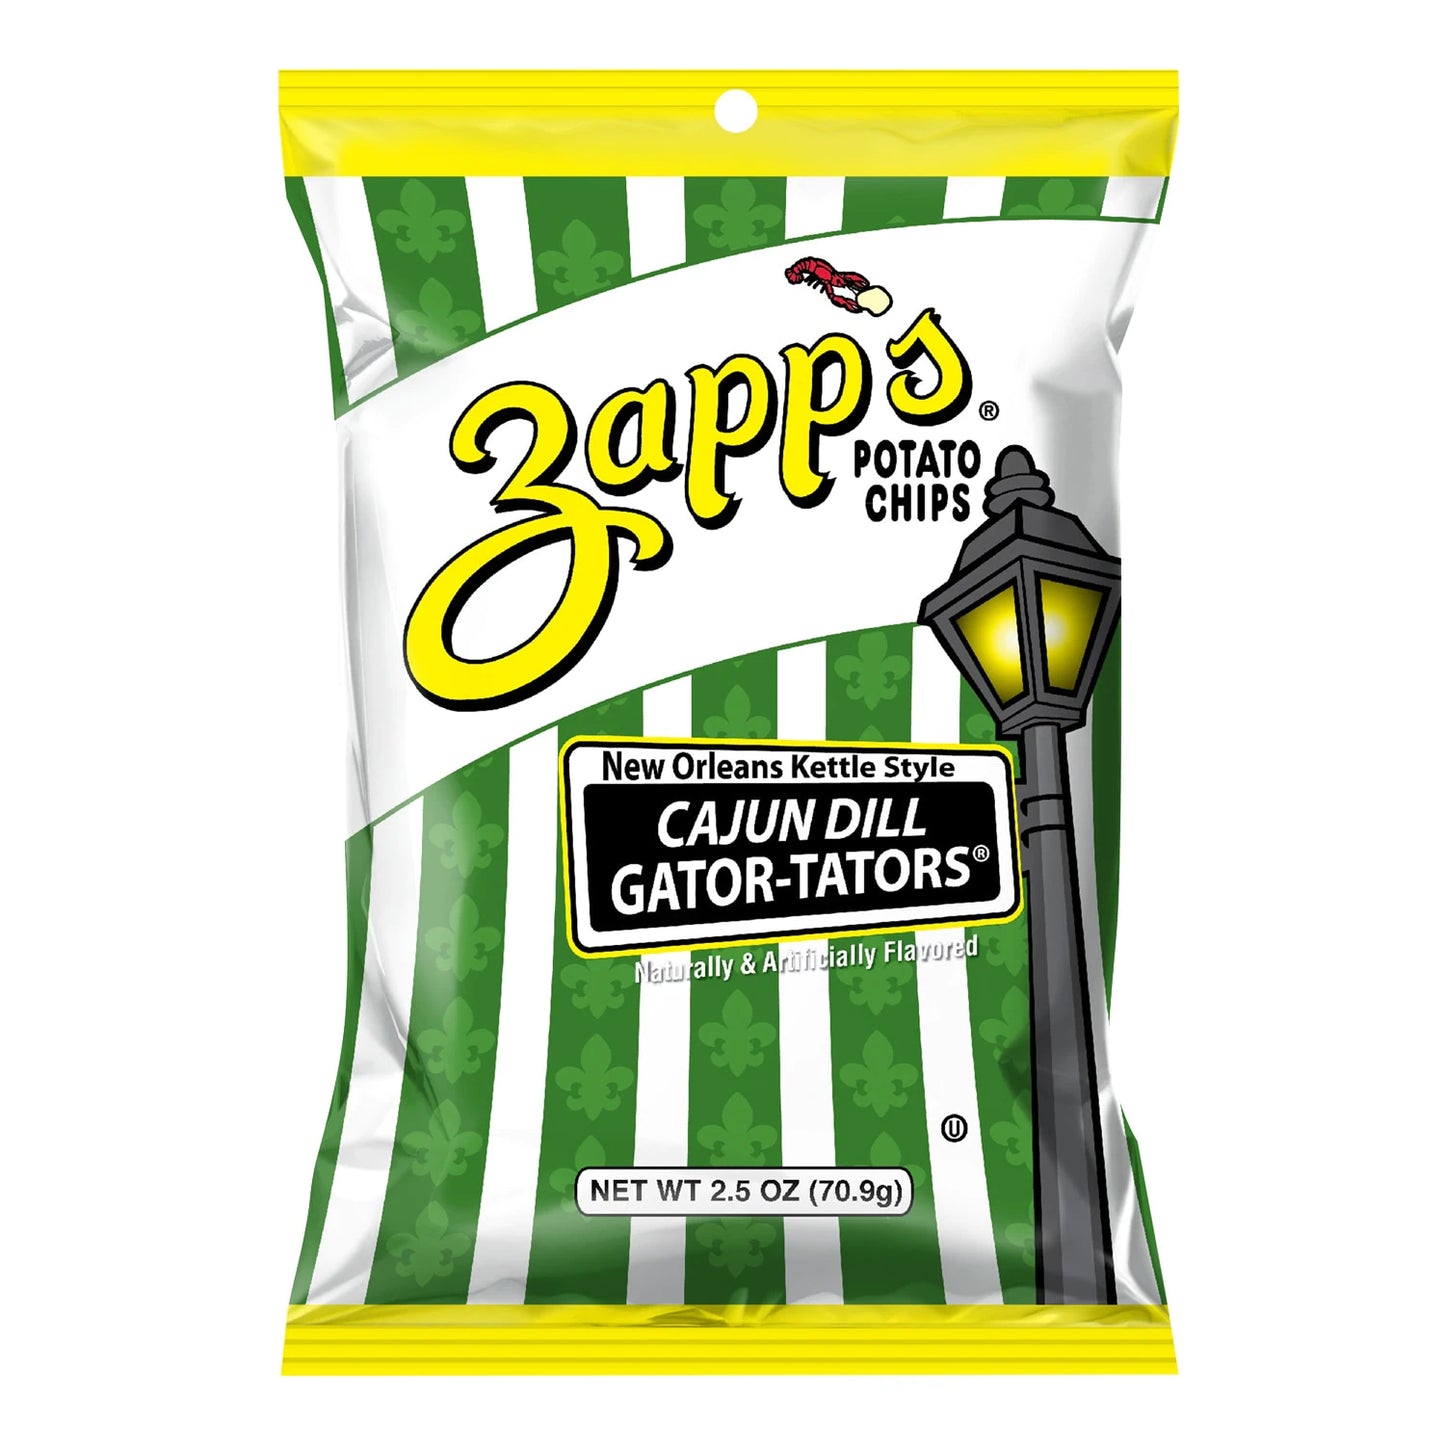 zapps potato chips